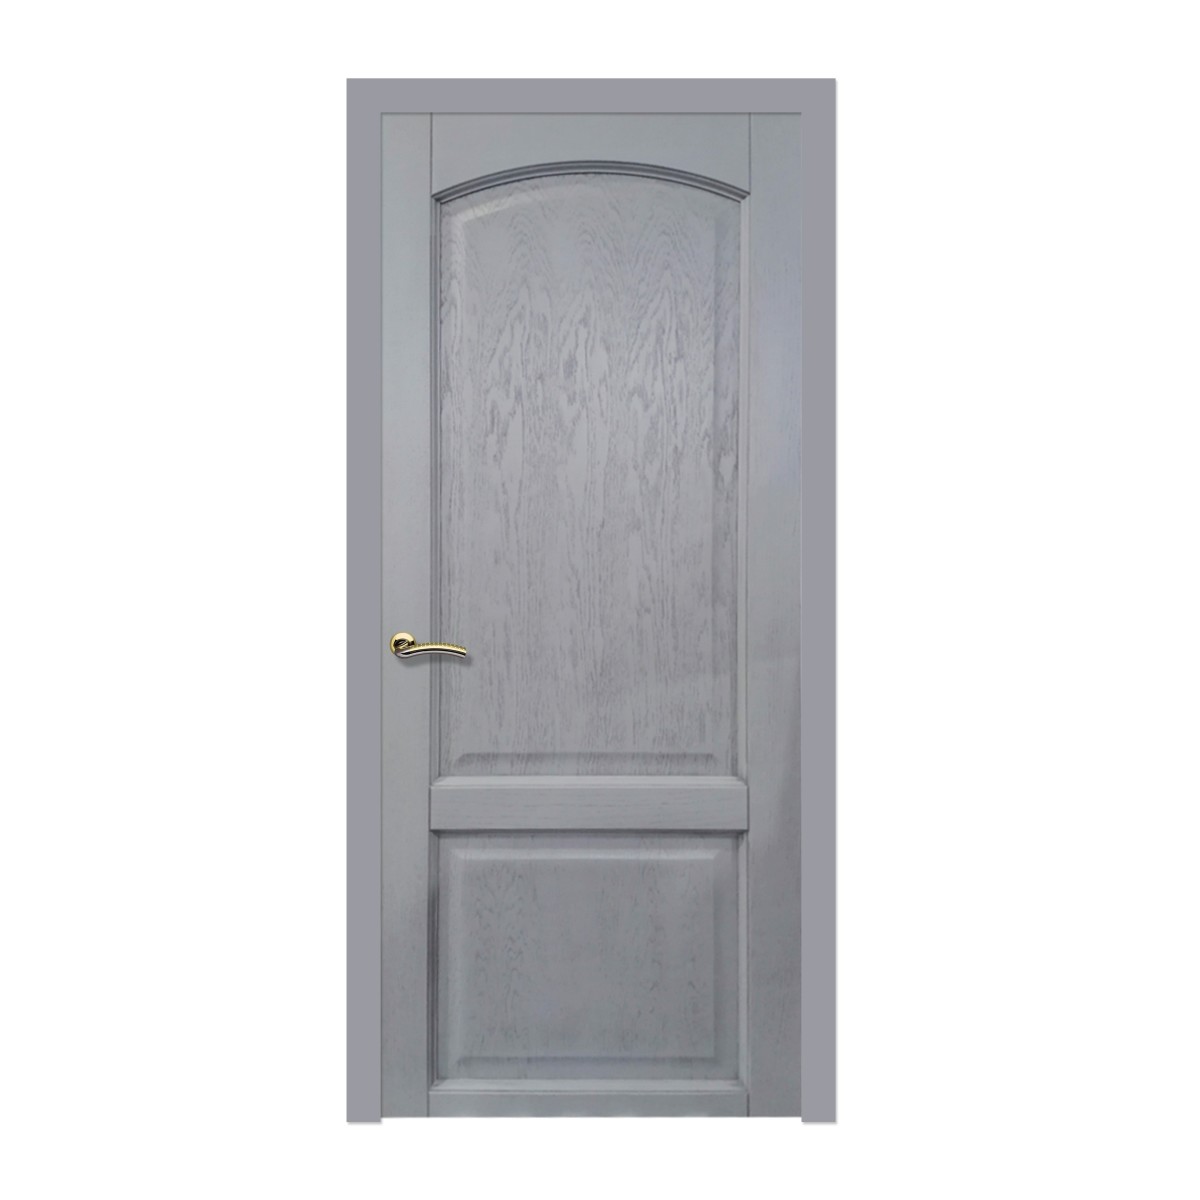 Дверь межкомнатная глухая 819 80X200 см, шпон, цвет дуб серая патина